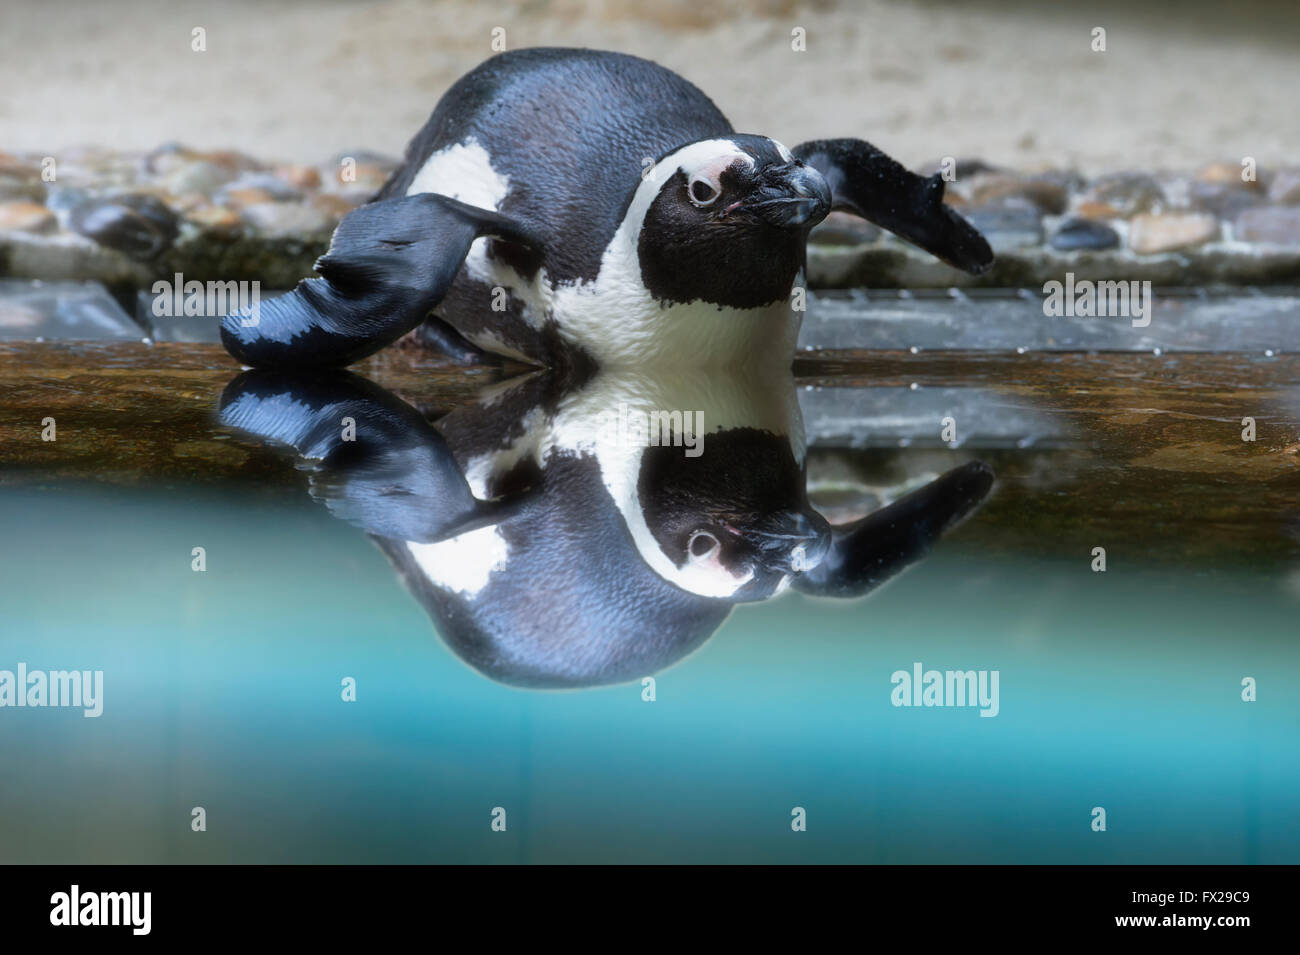 African penguin or Jackass penguin (Spheniscus demersus) reflecting in the water Stock Photo